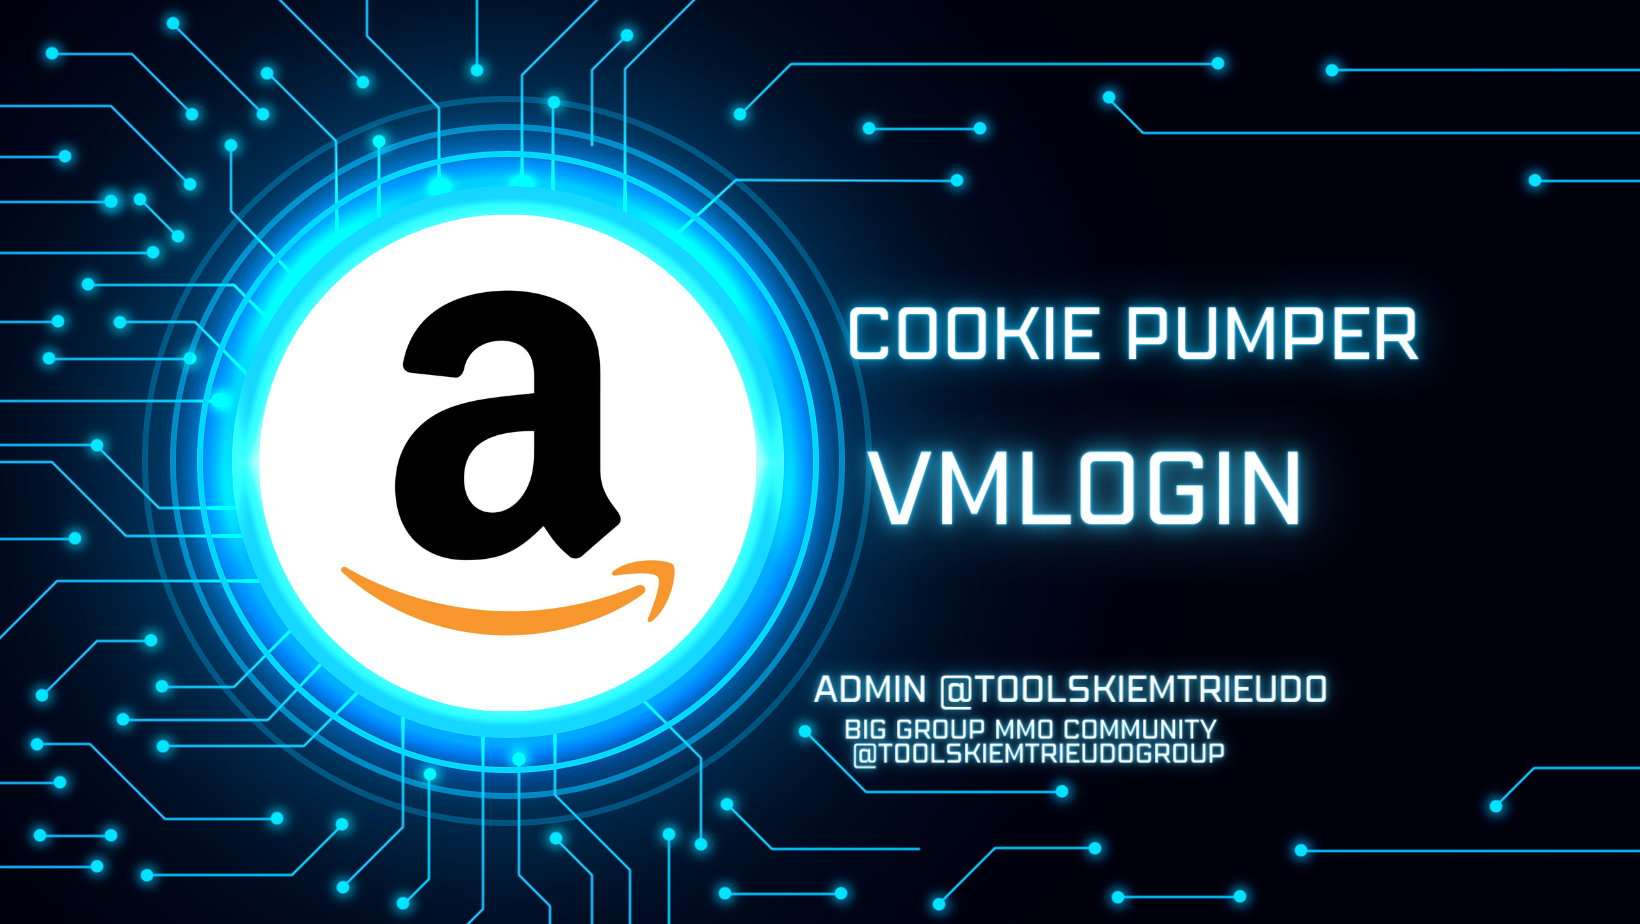 mazon trên VMlogin như người dùng thật- Amazon cookie Pumper on VMlogin Automation like a human